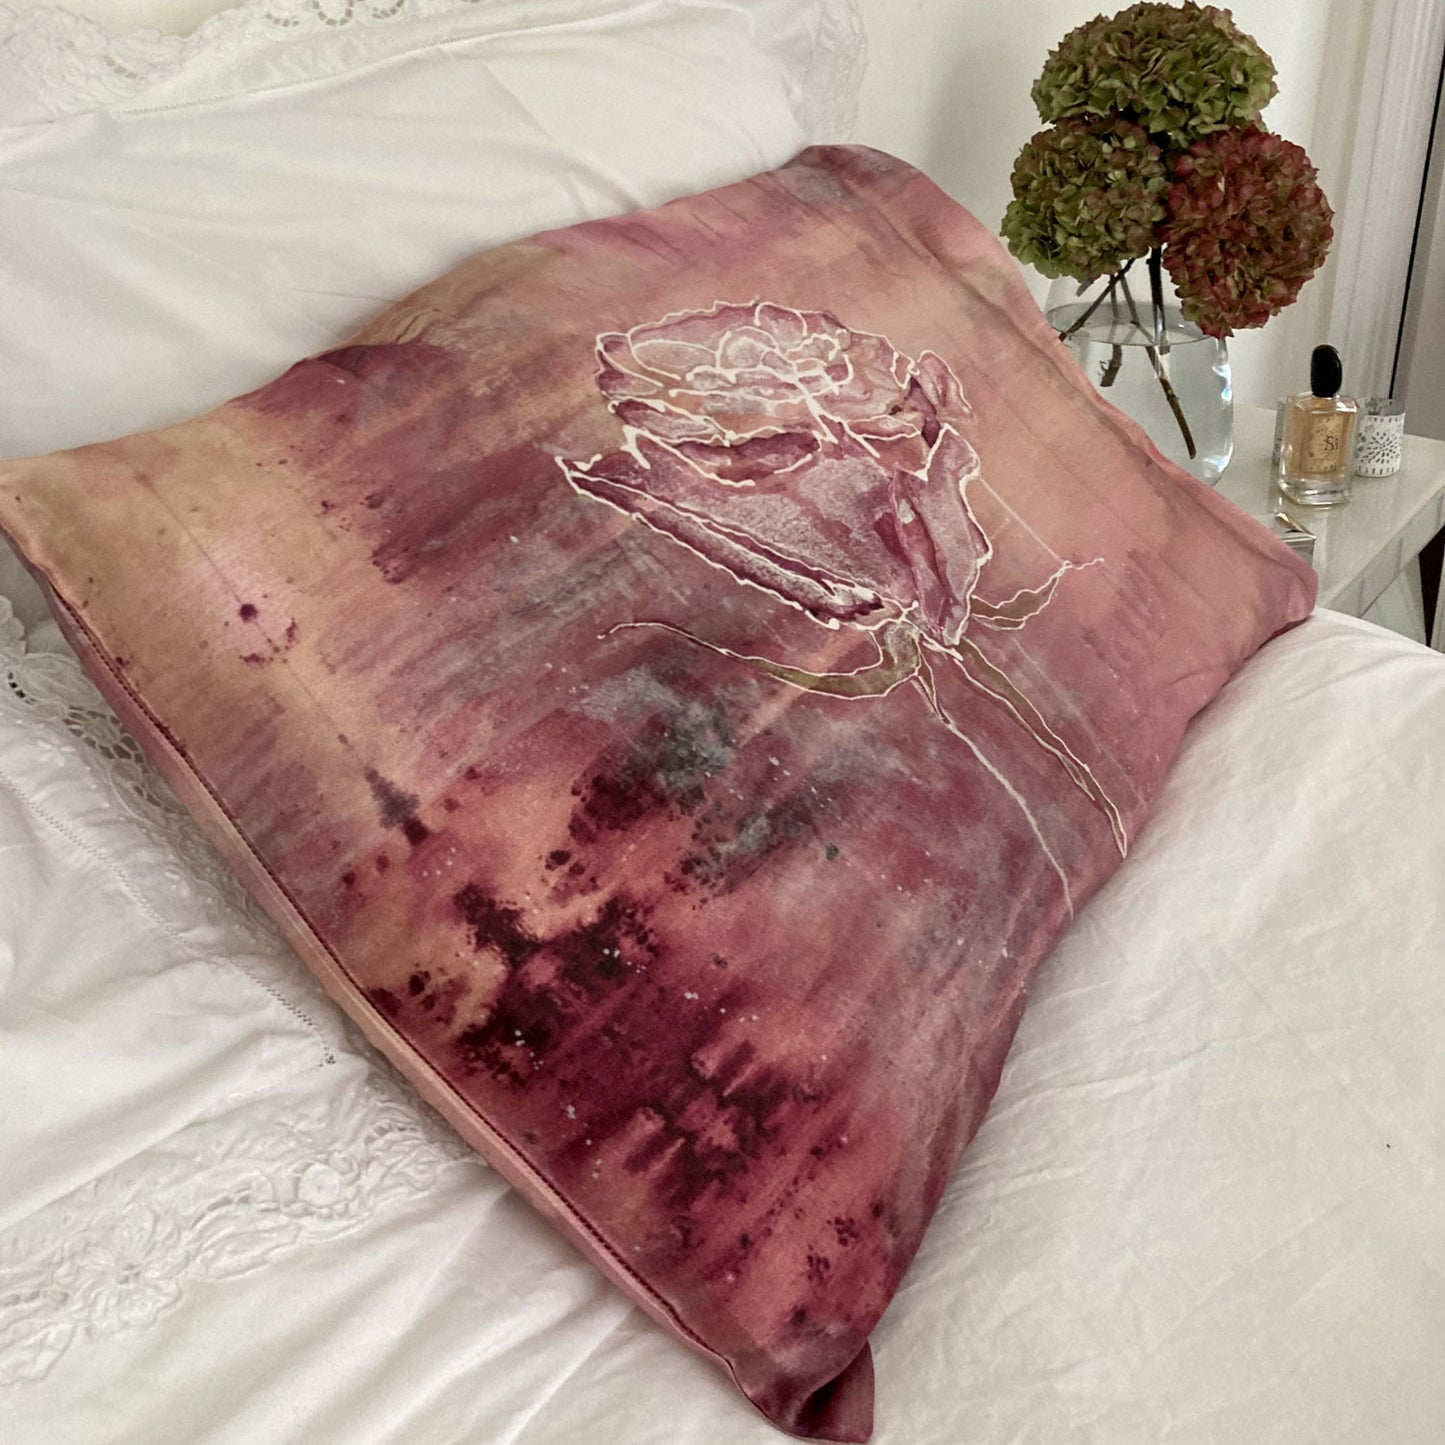 Silk Pillowcase - Violet Pink Rose